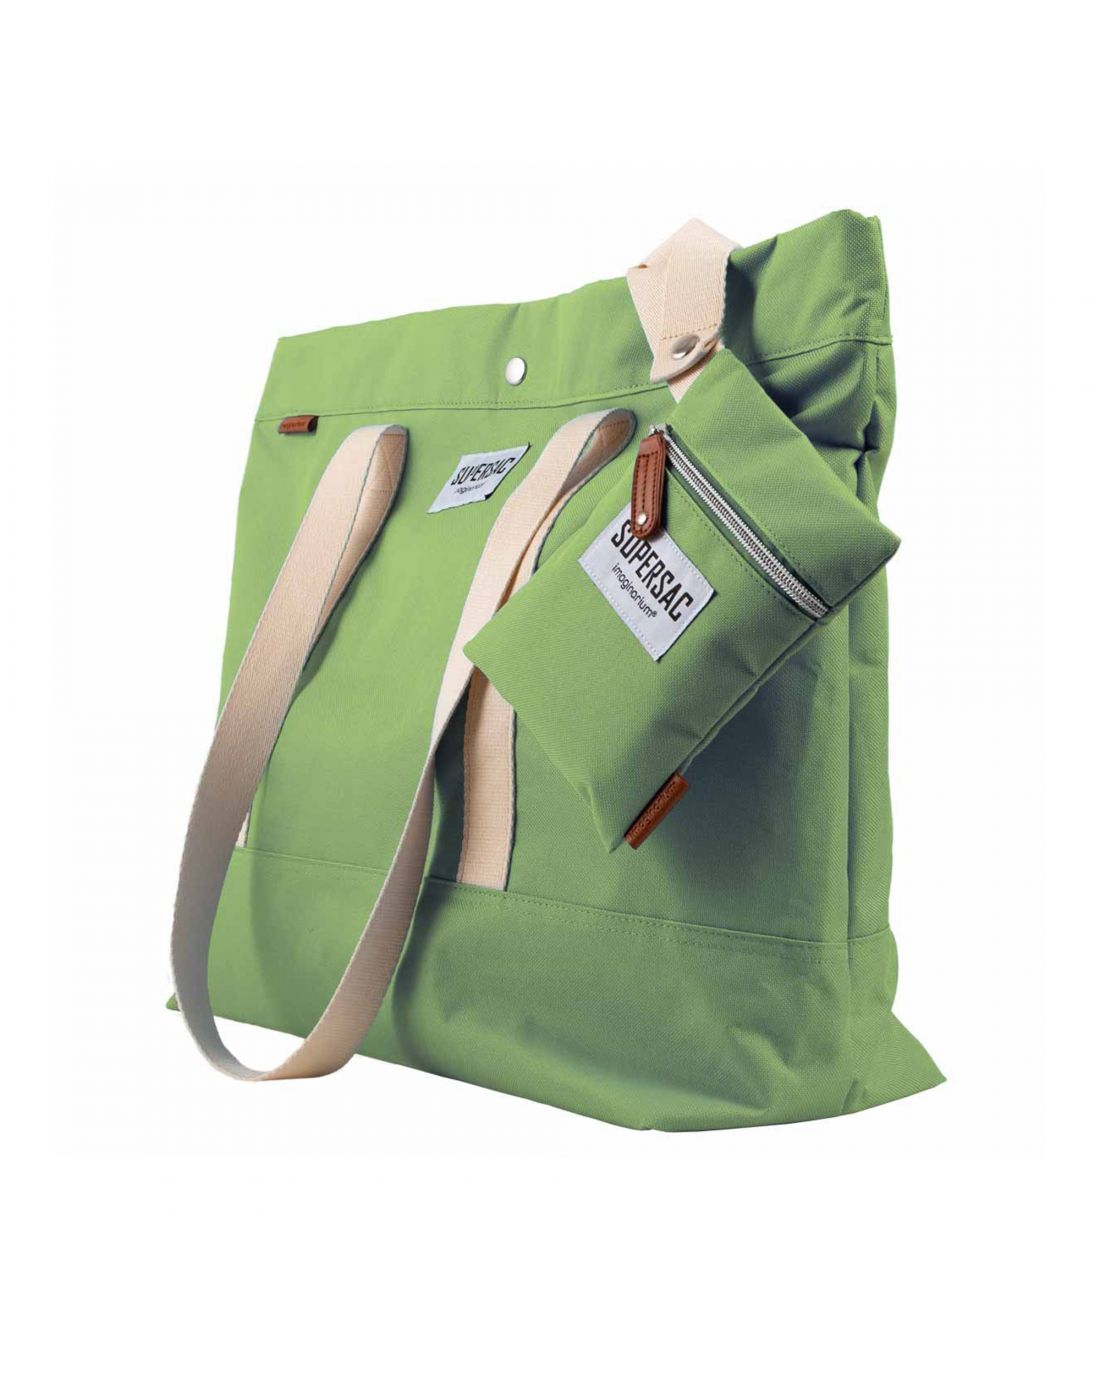 Τσάντα Supersac Green Imaginarium